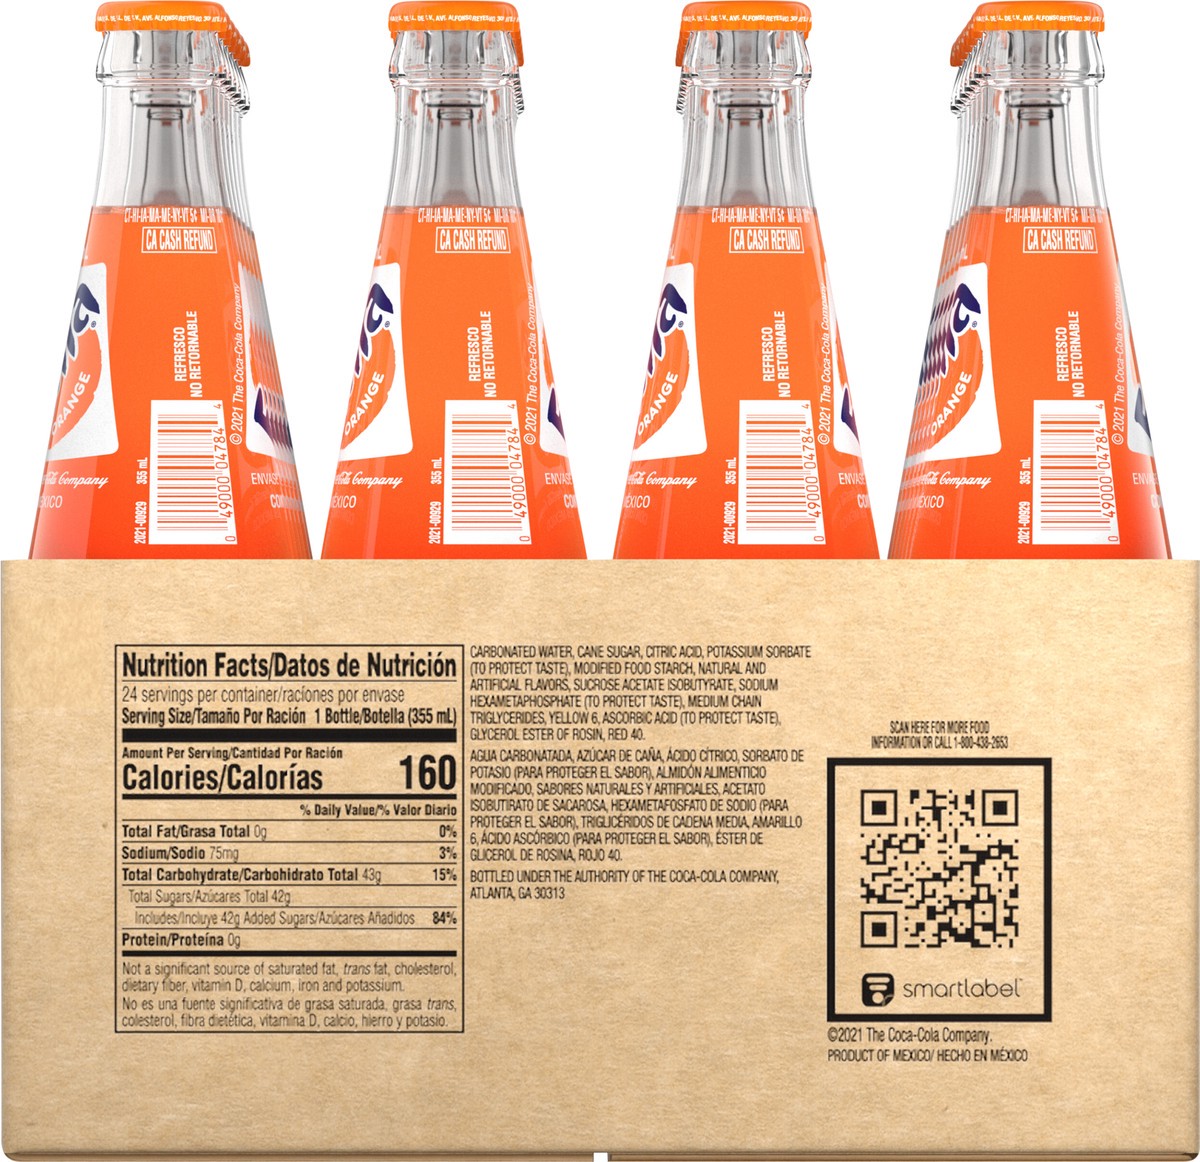 slide 3 of 9, Fanta Orange Mexico Soda Fruit Flavored Soft Drink, 355 mL, 24 Pack, 24 ct